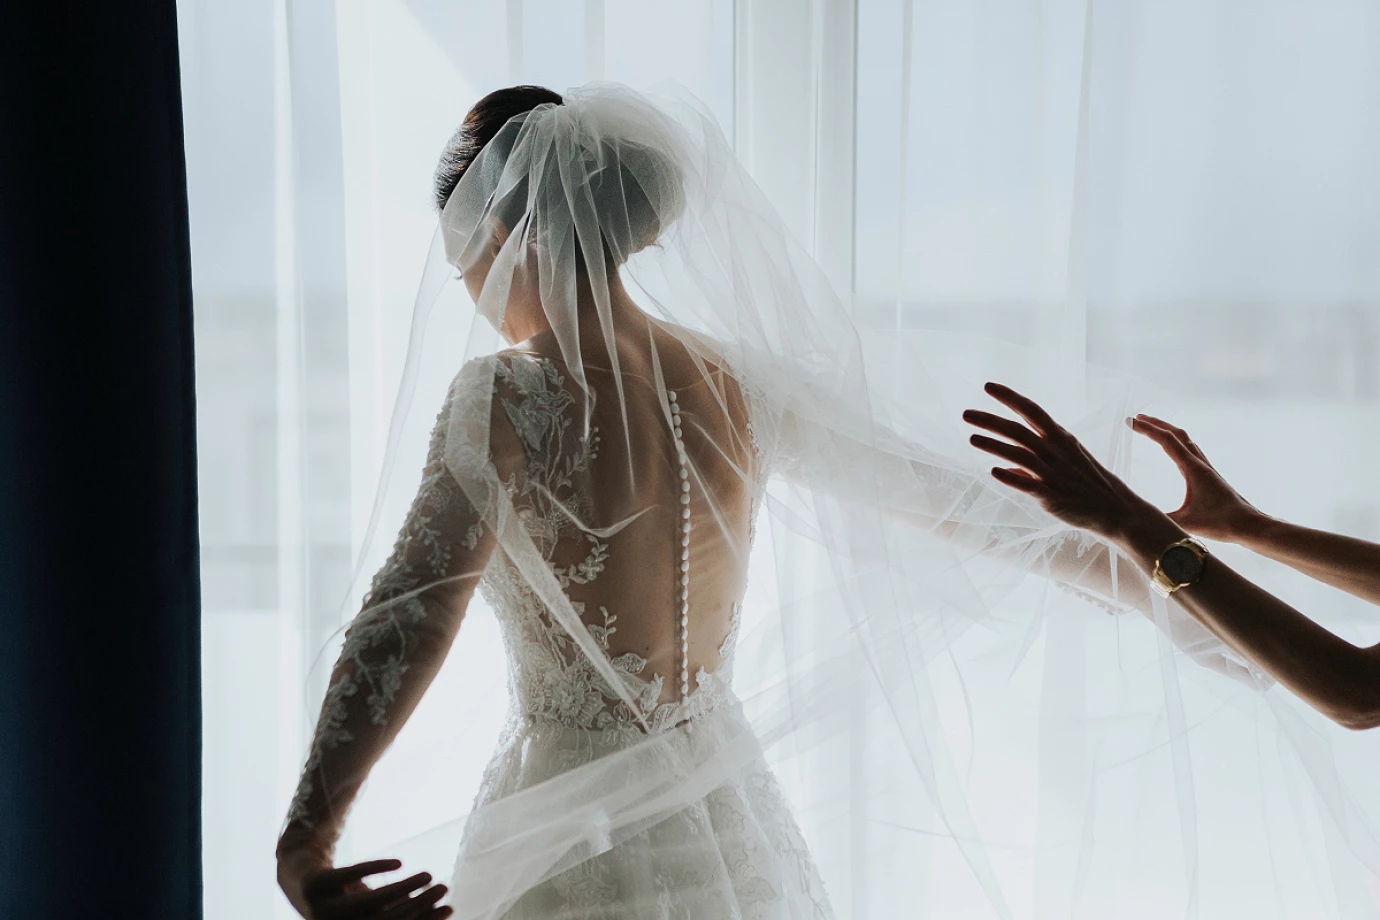 zdjęcia bialystok fotograf krzysztof-bezubik portfolio zdjecia slubne inspiracje wesele plener slubny sesja slubna